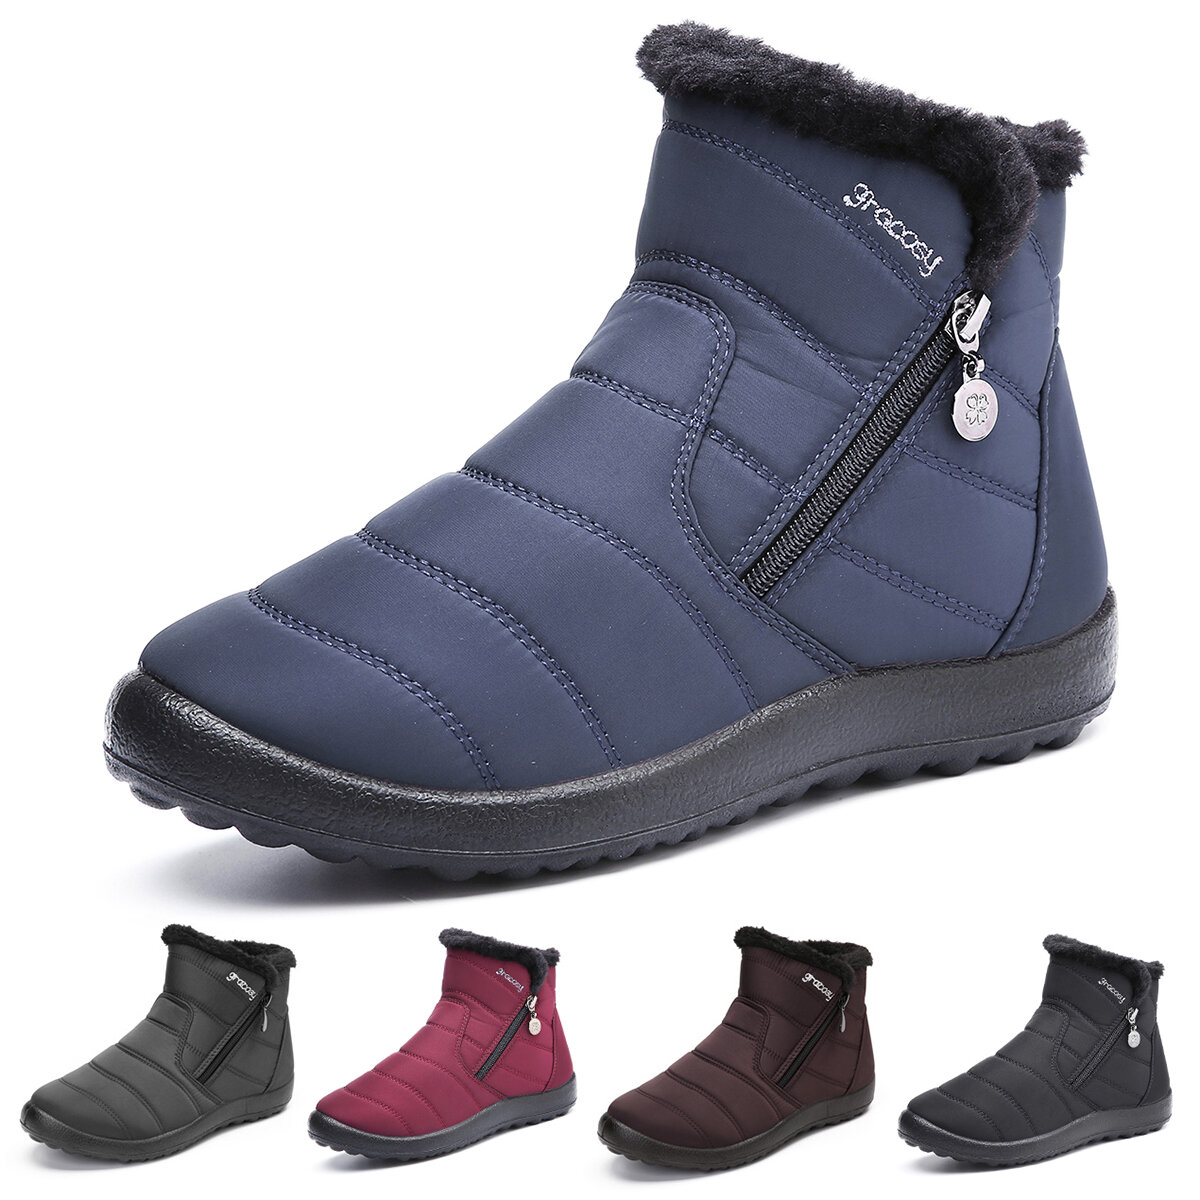 Грэкоси теплые зимние сапоги для женщин, антипролежневые, водонепроницаемые, с меховой подкладкой, для наружной обуви.